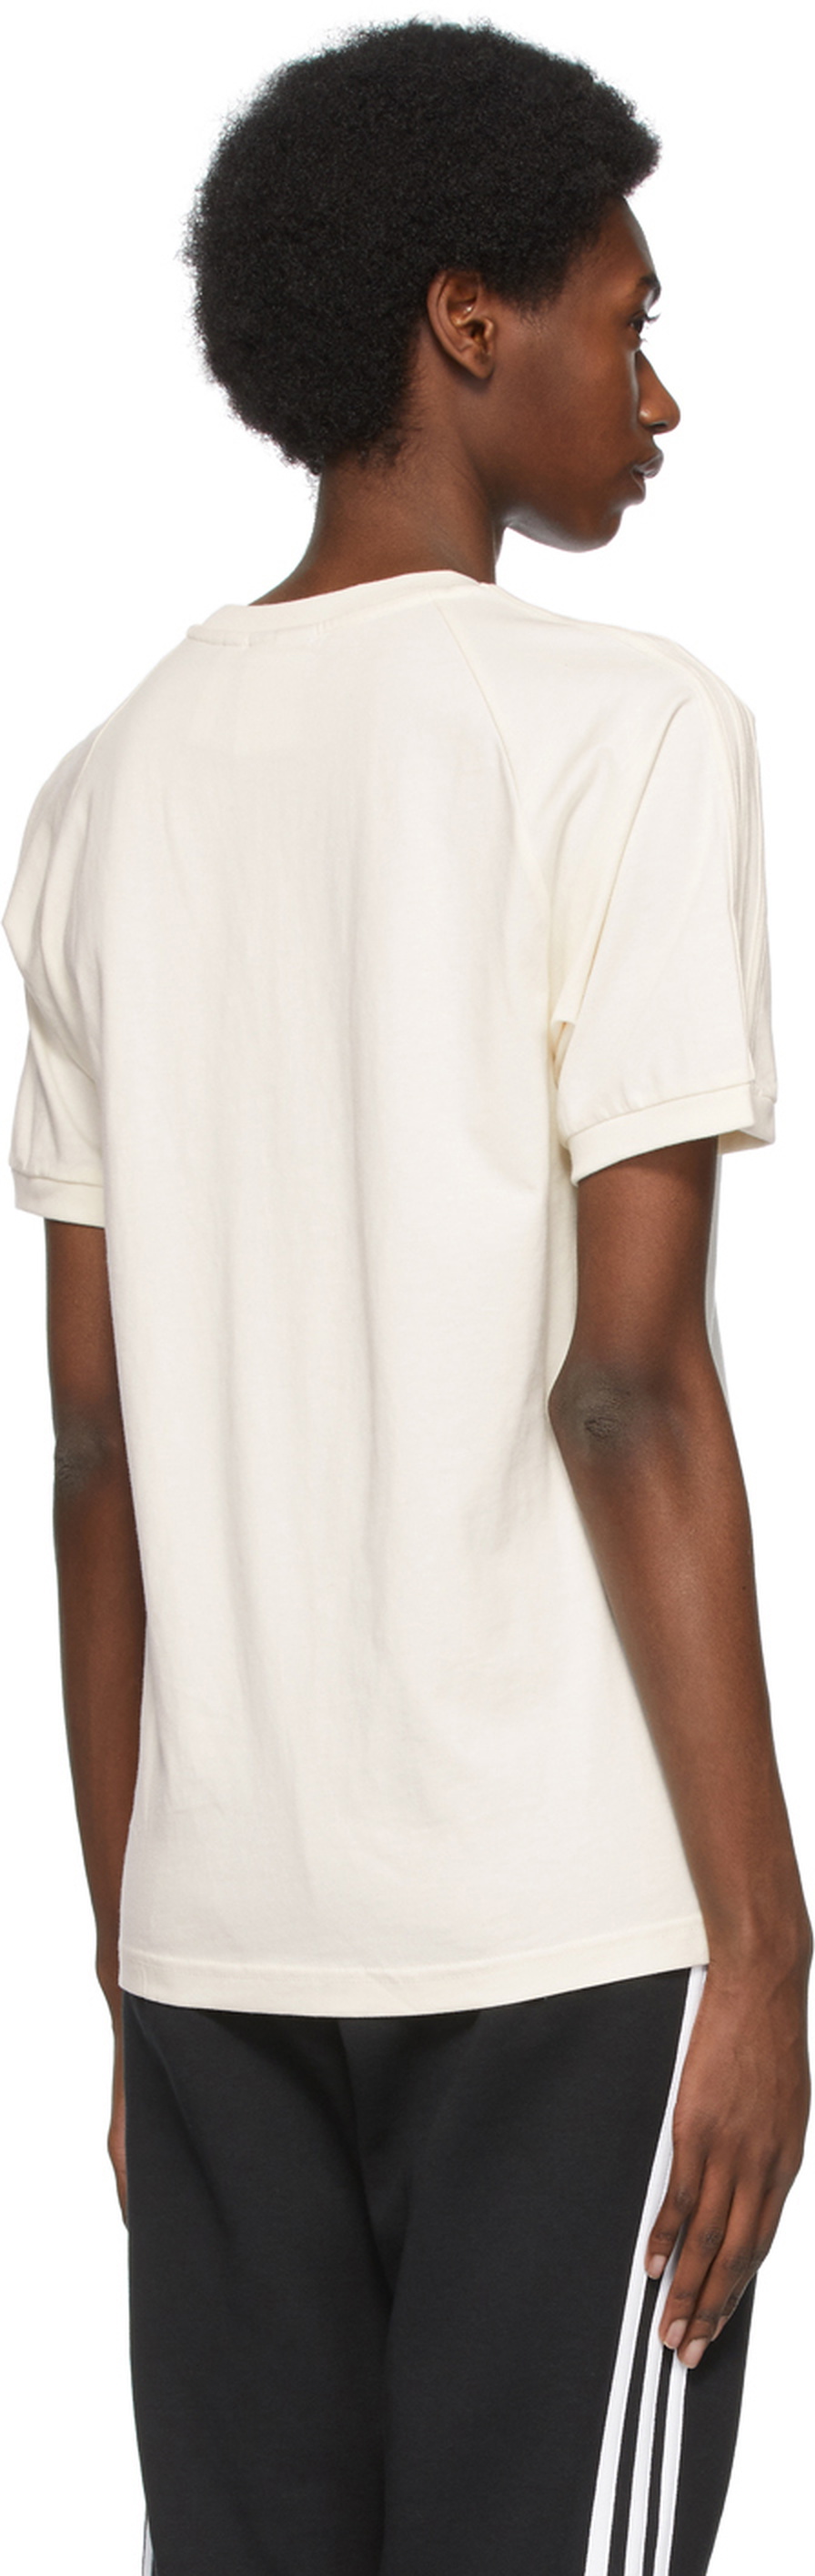 adidas Originals Off-White Adicolor T-Shirt No-Dye adidas 3-Stripes Originals